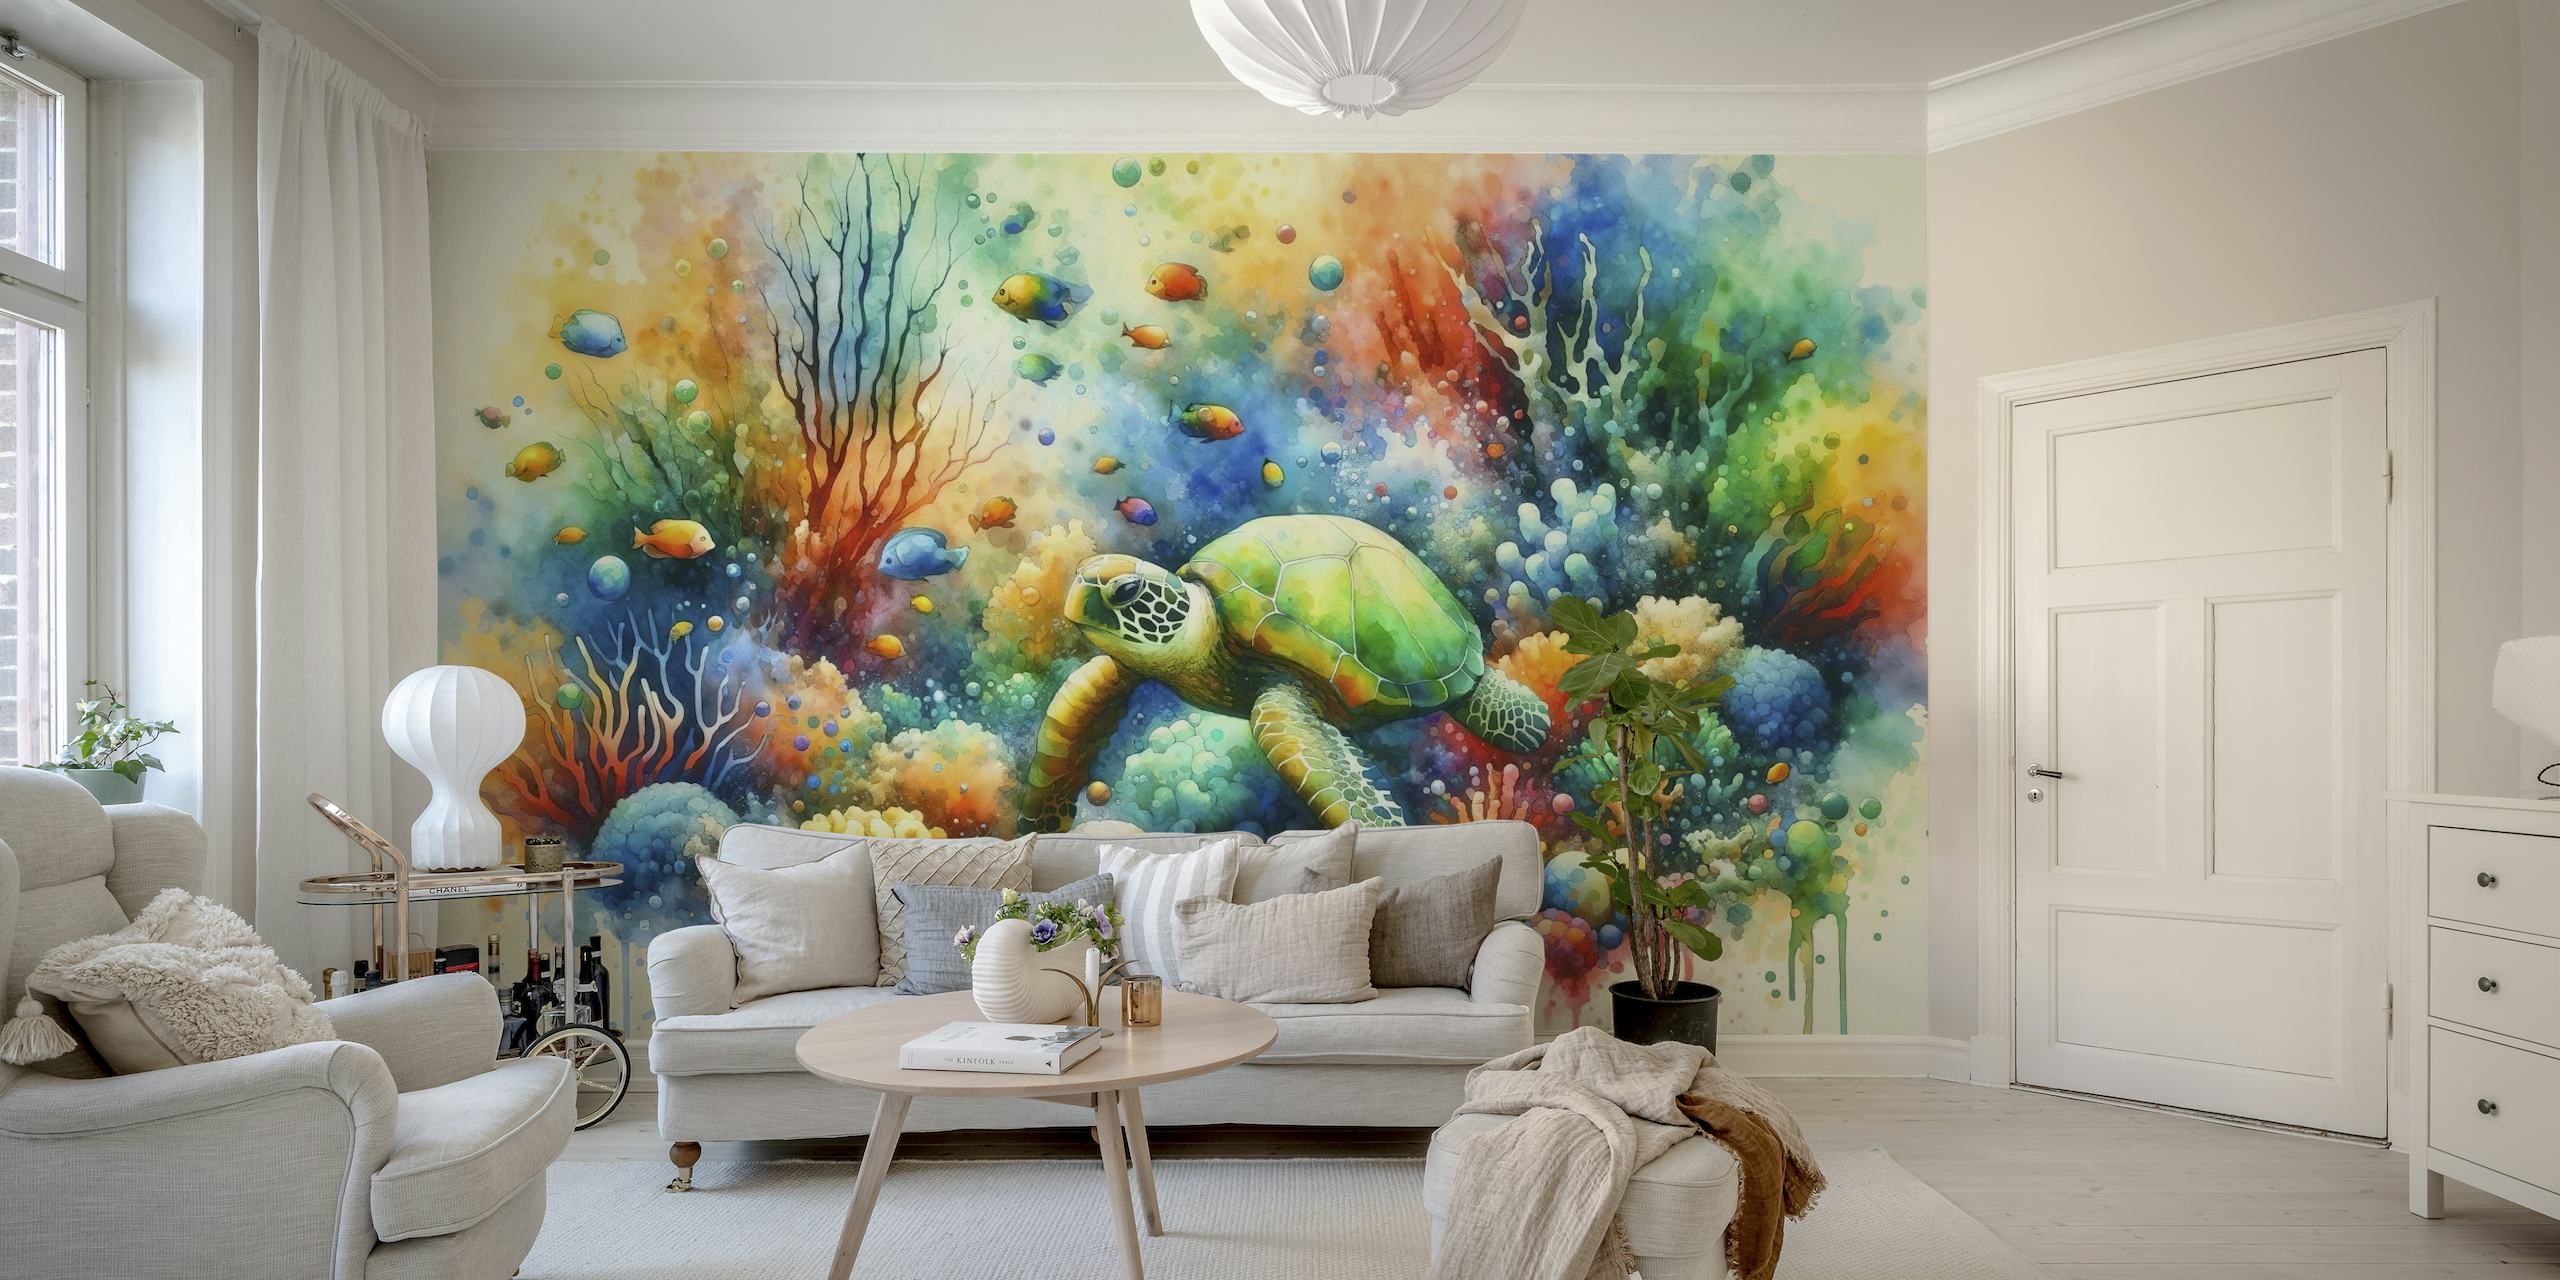 Undersea Encounter Turtle Meets Fish wallpaper